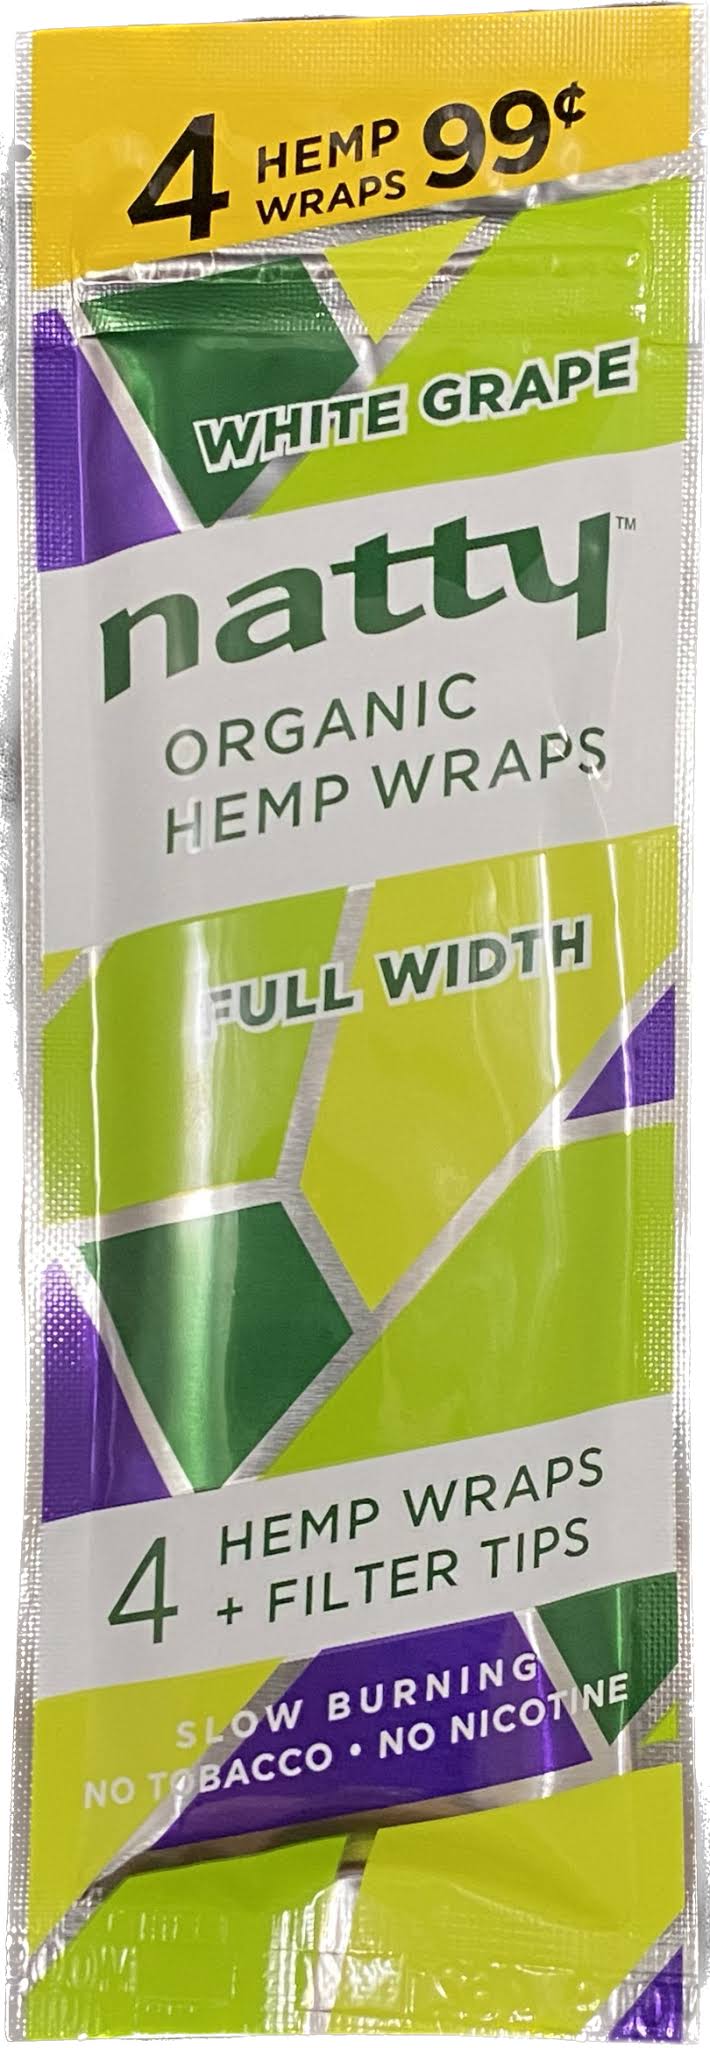 Natty Organic Hemp Wraps 4-Pack White Grape